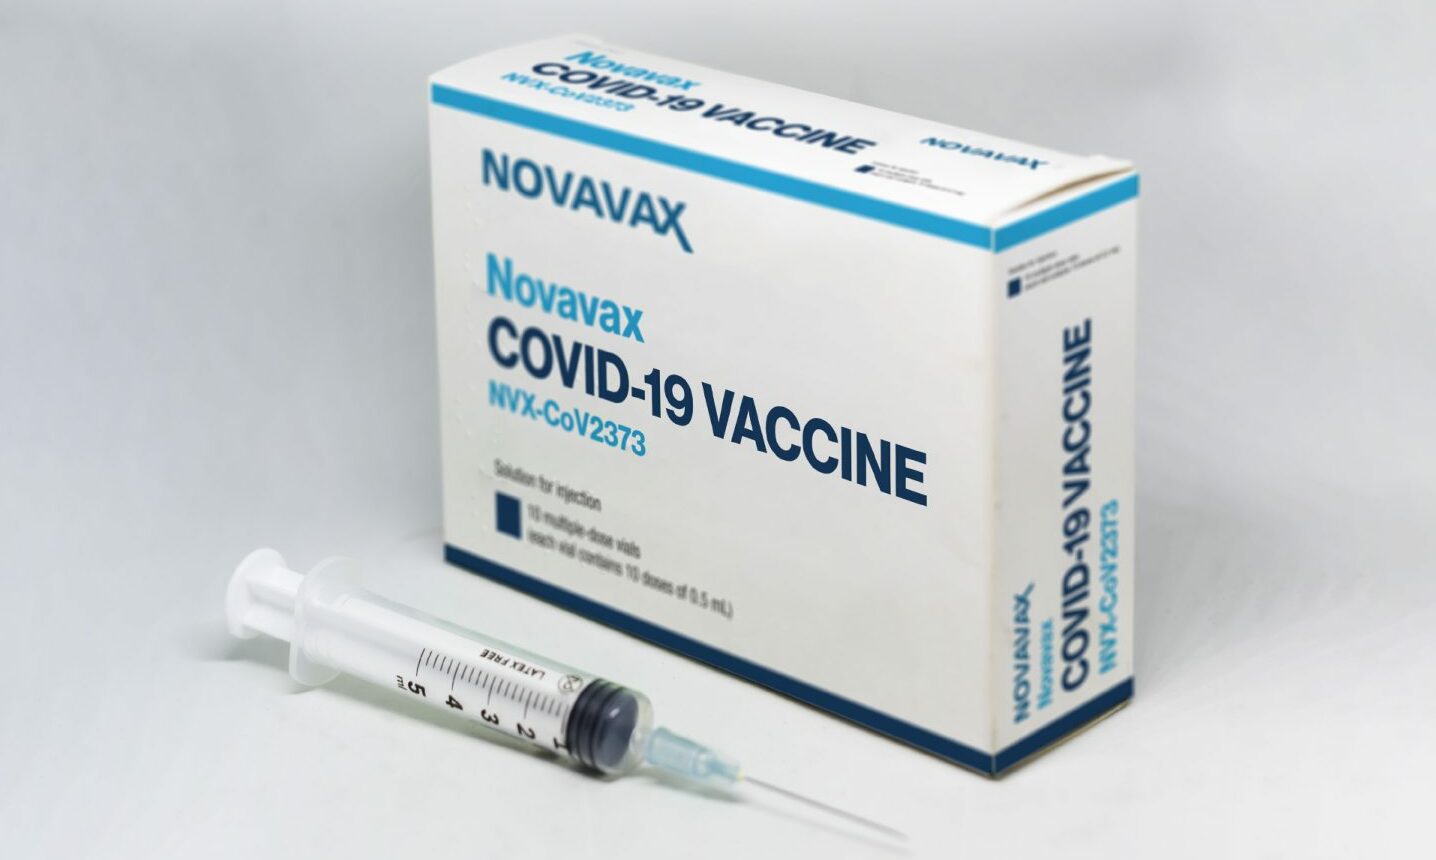 ¿Cómo funciona la vacuna Novavax Covid?